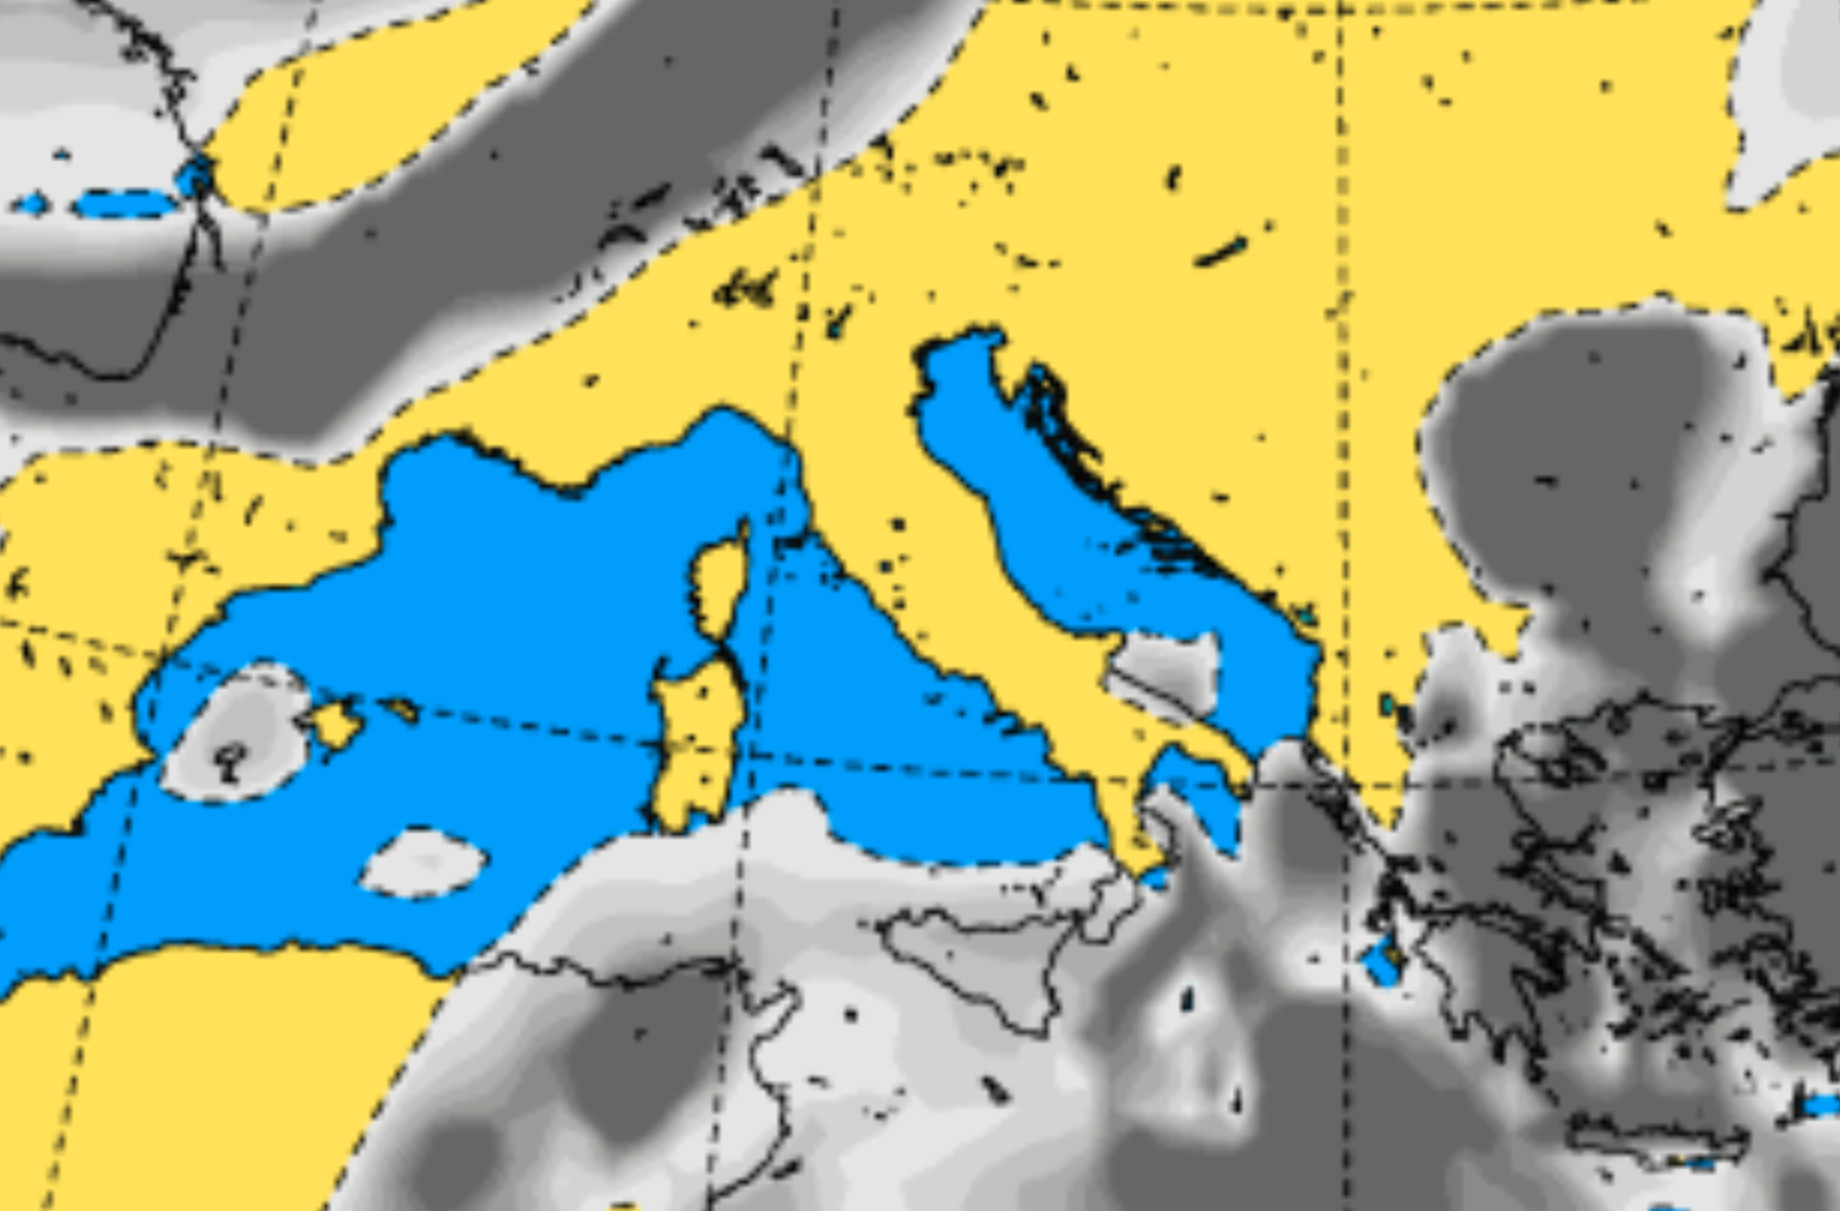 Meteo Sicilia domani, maltempo e pioggia sulla Sicilia: condizioni instabili su tutte le province